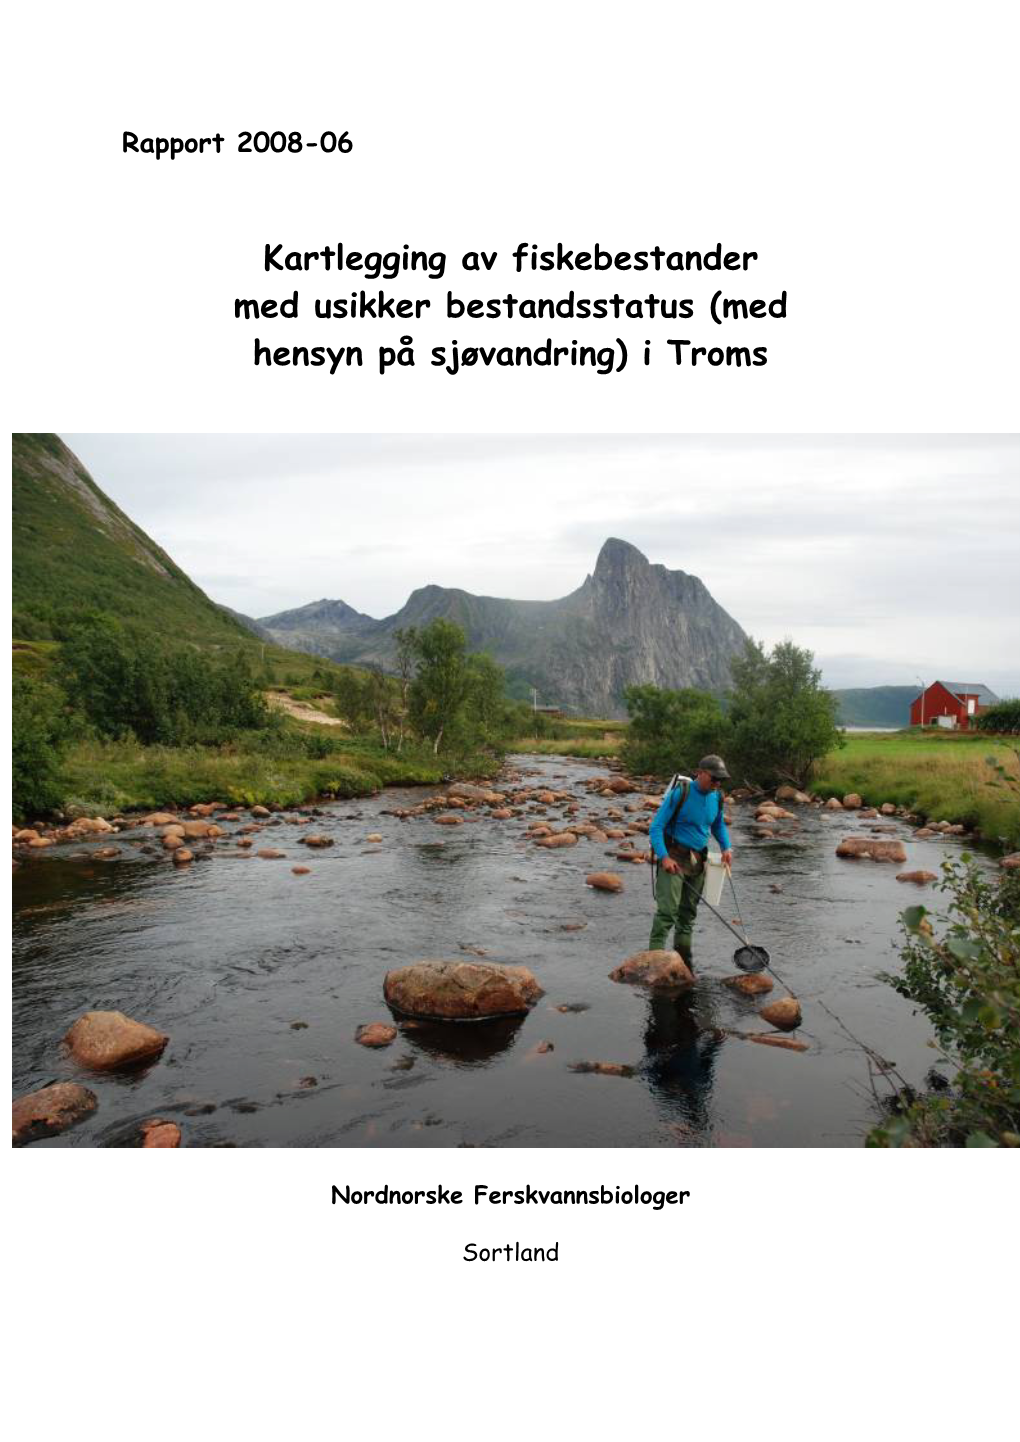 Kartlegging Av Fiskebestander Med Usikker Bestandstatus I Troms